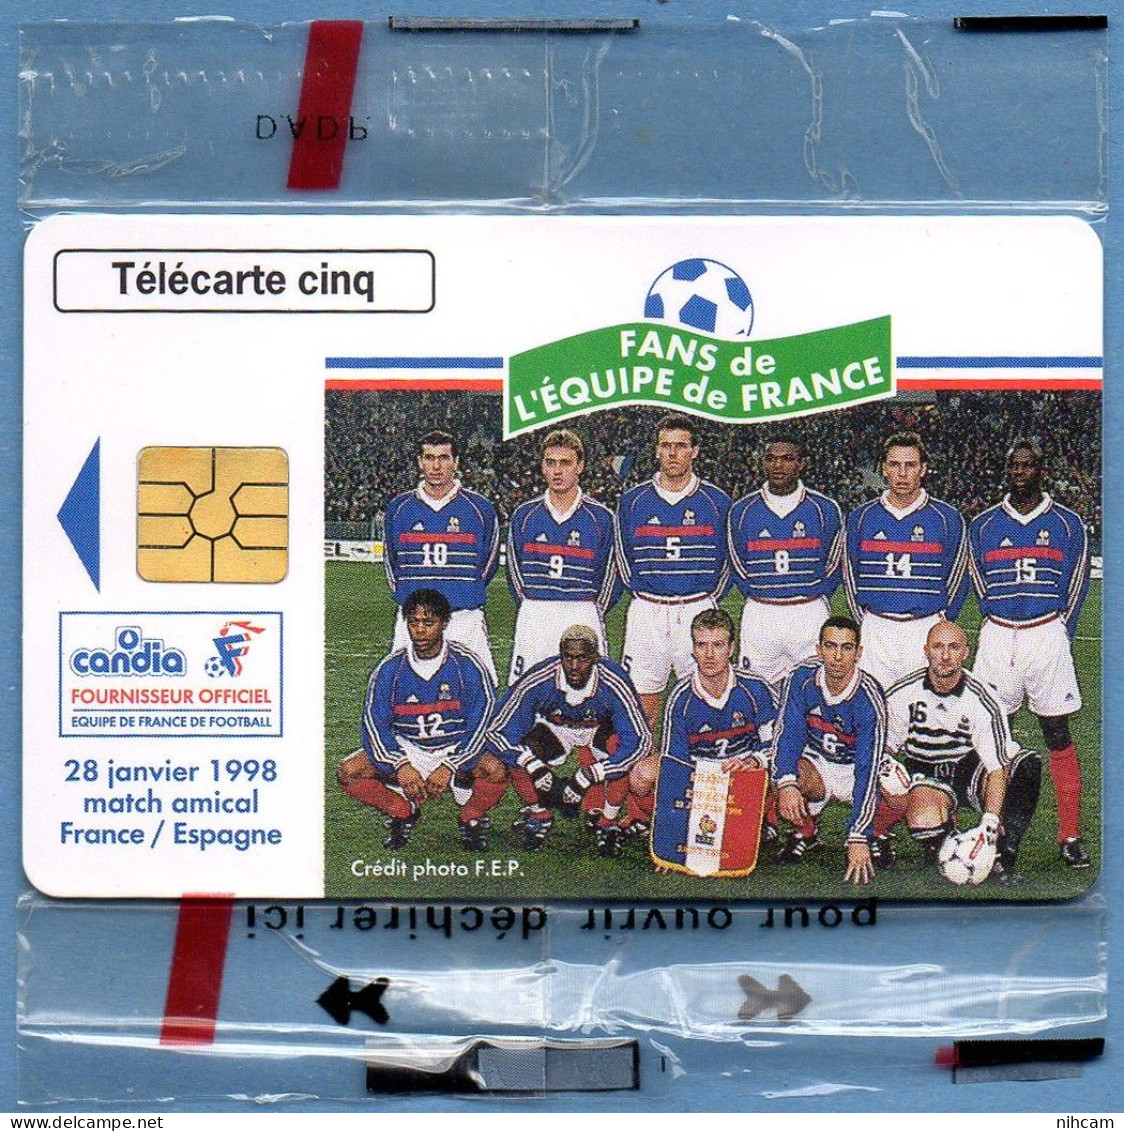 Télécarte France 5 U NSB Candia Equipe De France Football T2G 03/98 6500 Ex. Zidane Deschamps Bartez Thuram.... - 5 Unidades